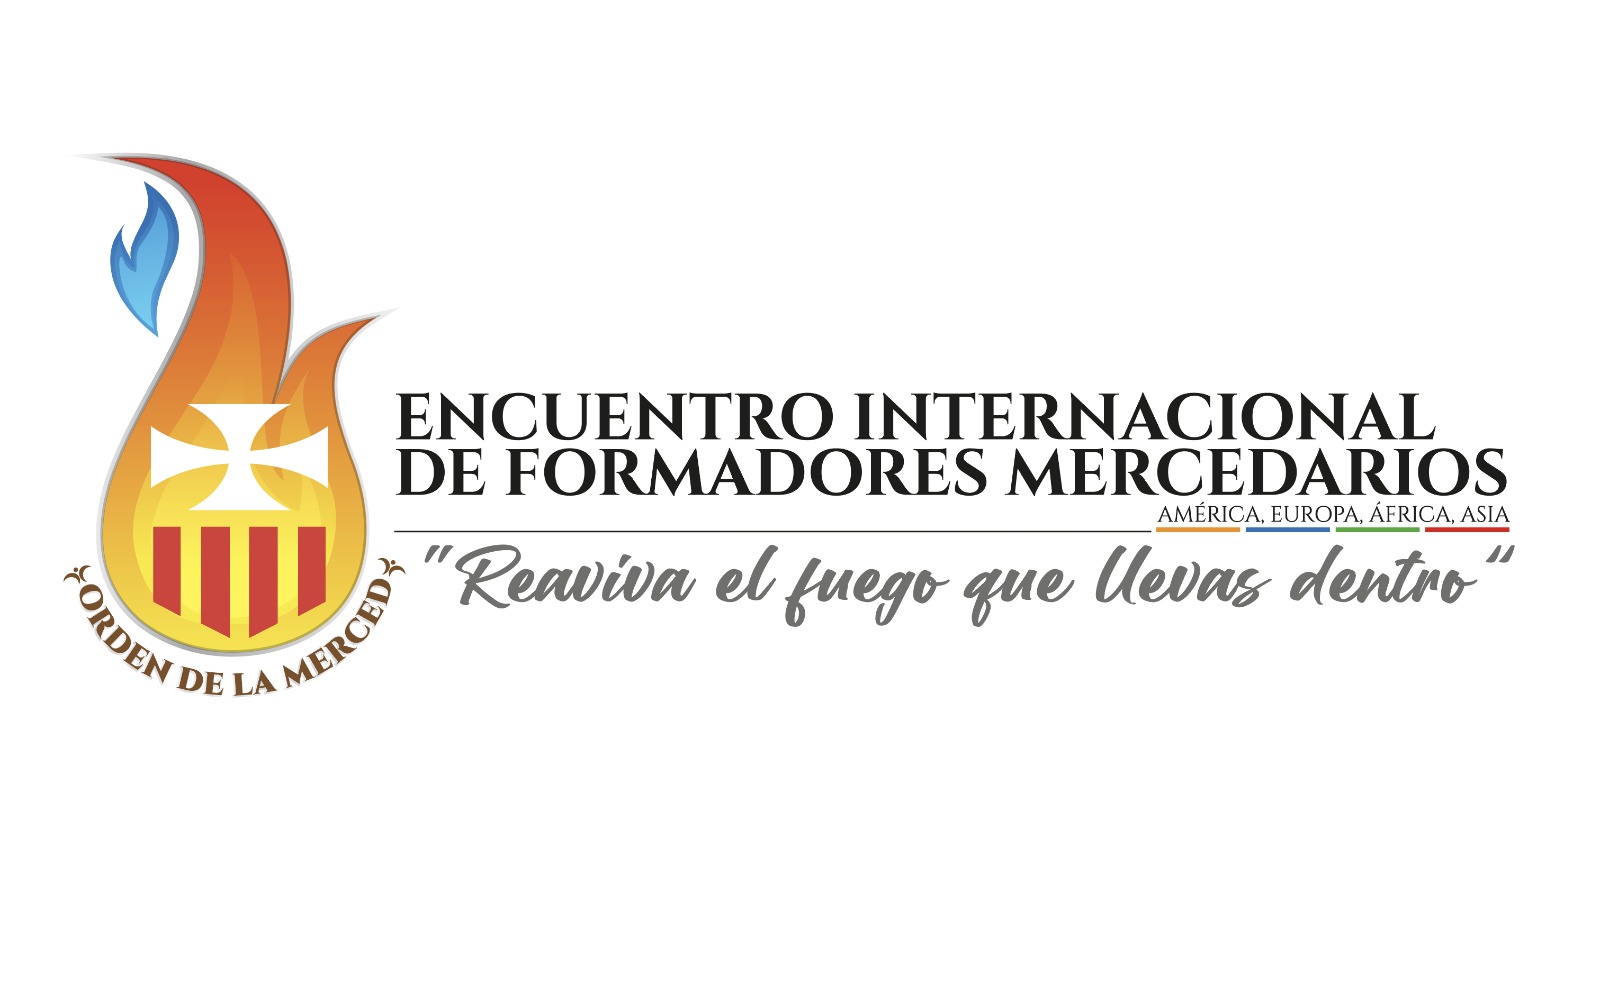 ENCUENTRO INTERNACIONAL DE FRMADORES MERCEDARIOS